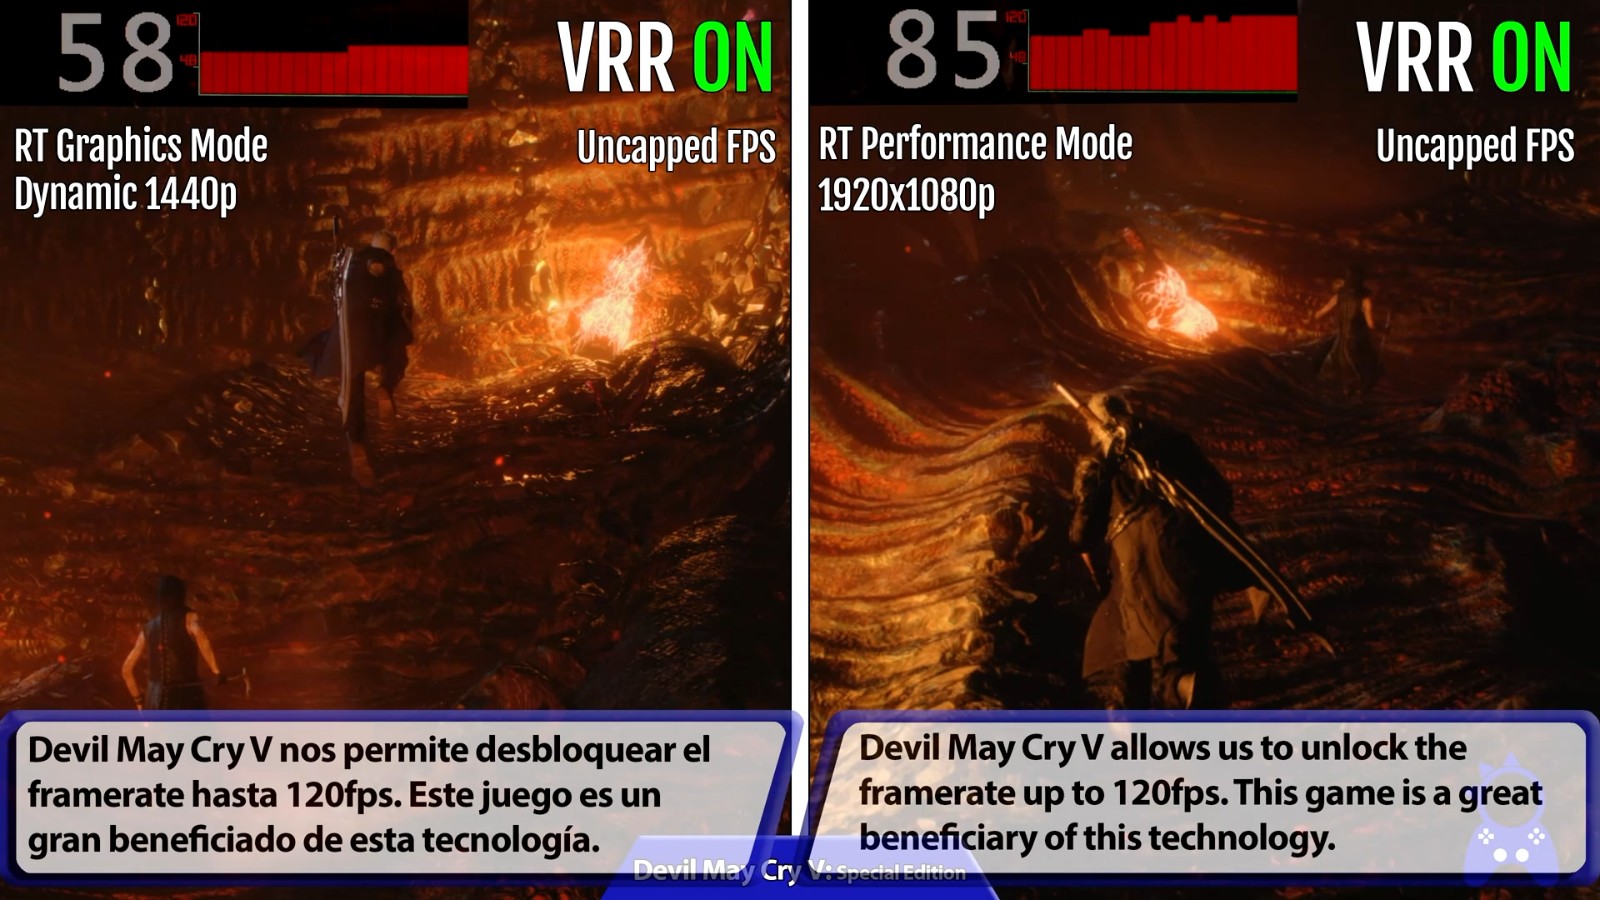 PS5 VRR功能测试：《漫威蜘蛛侠》《瑞奇与叮当》等帧数提升巨大